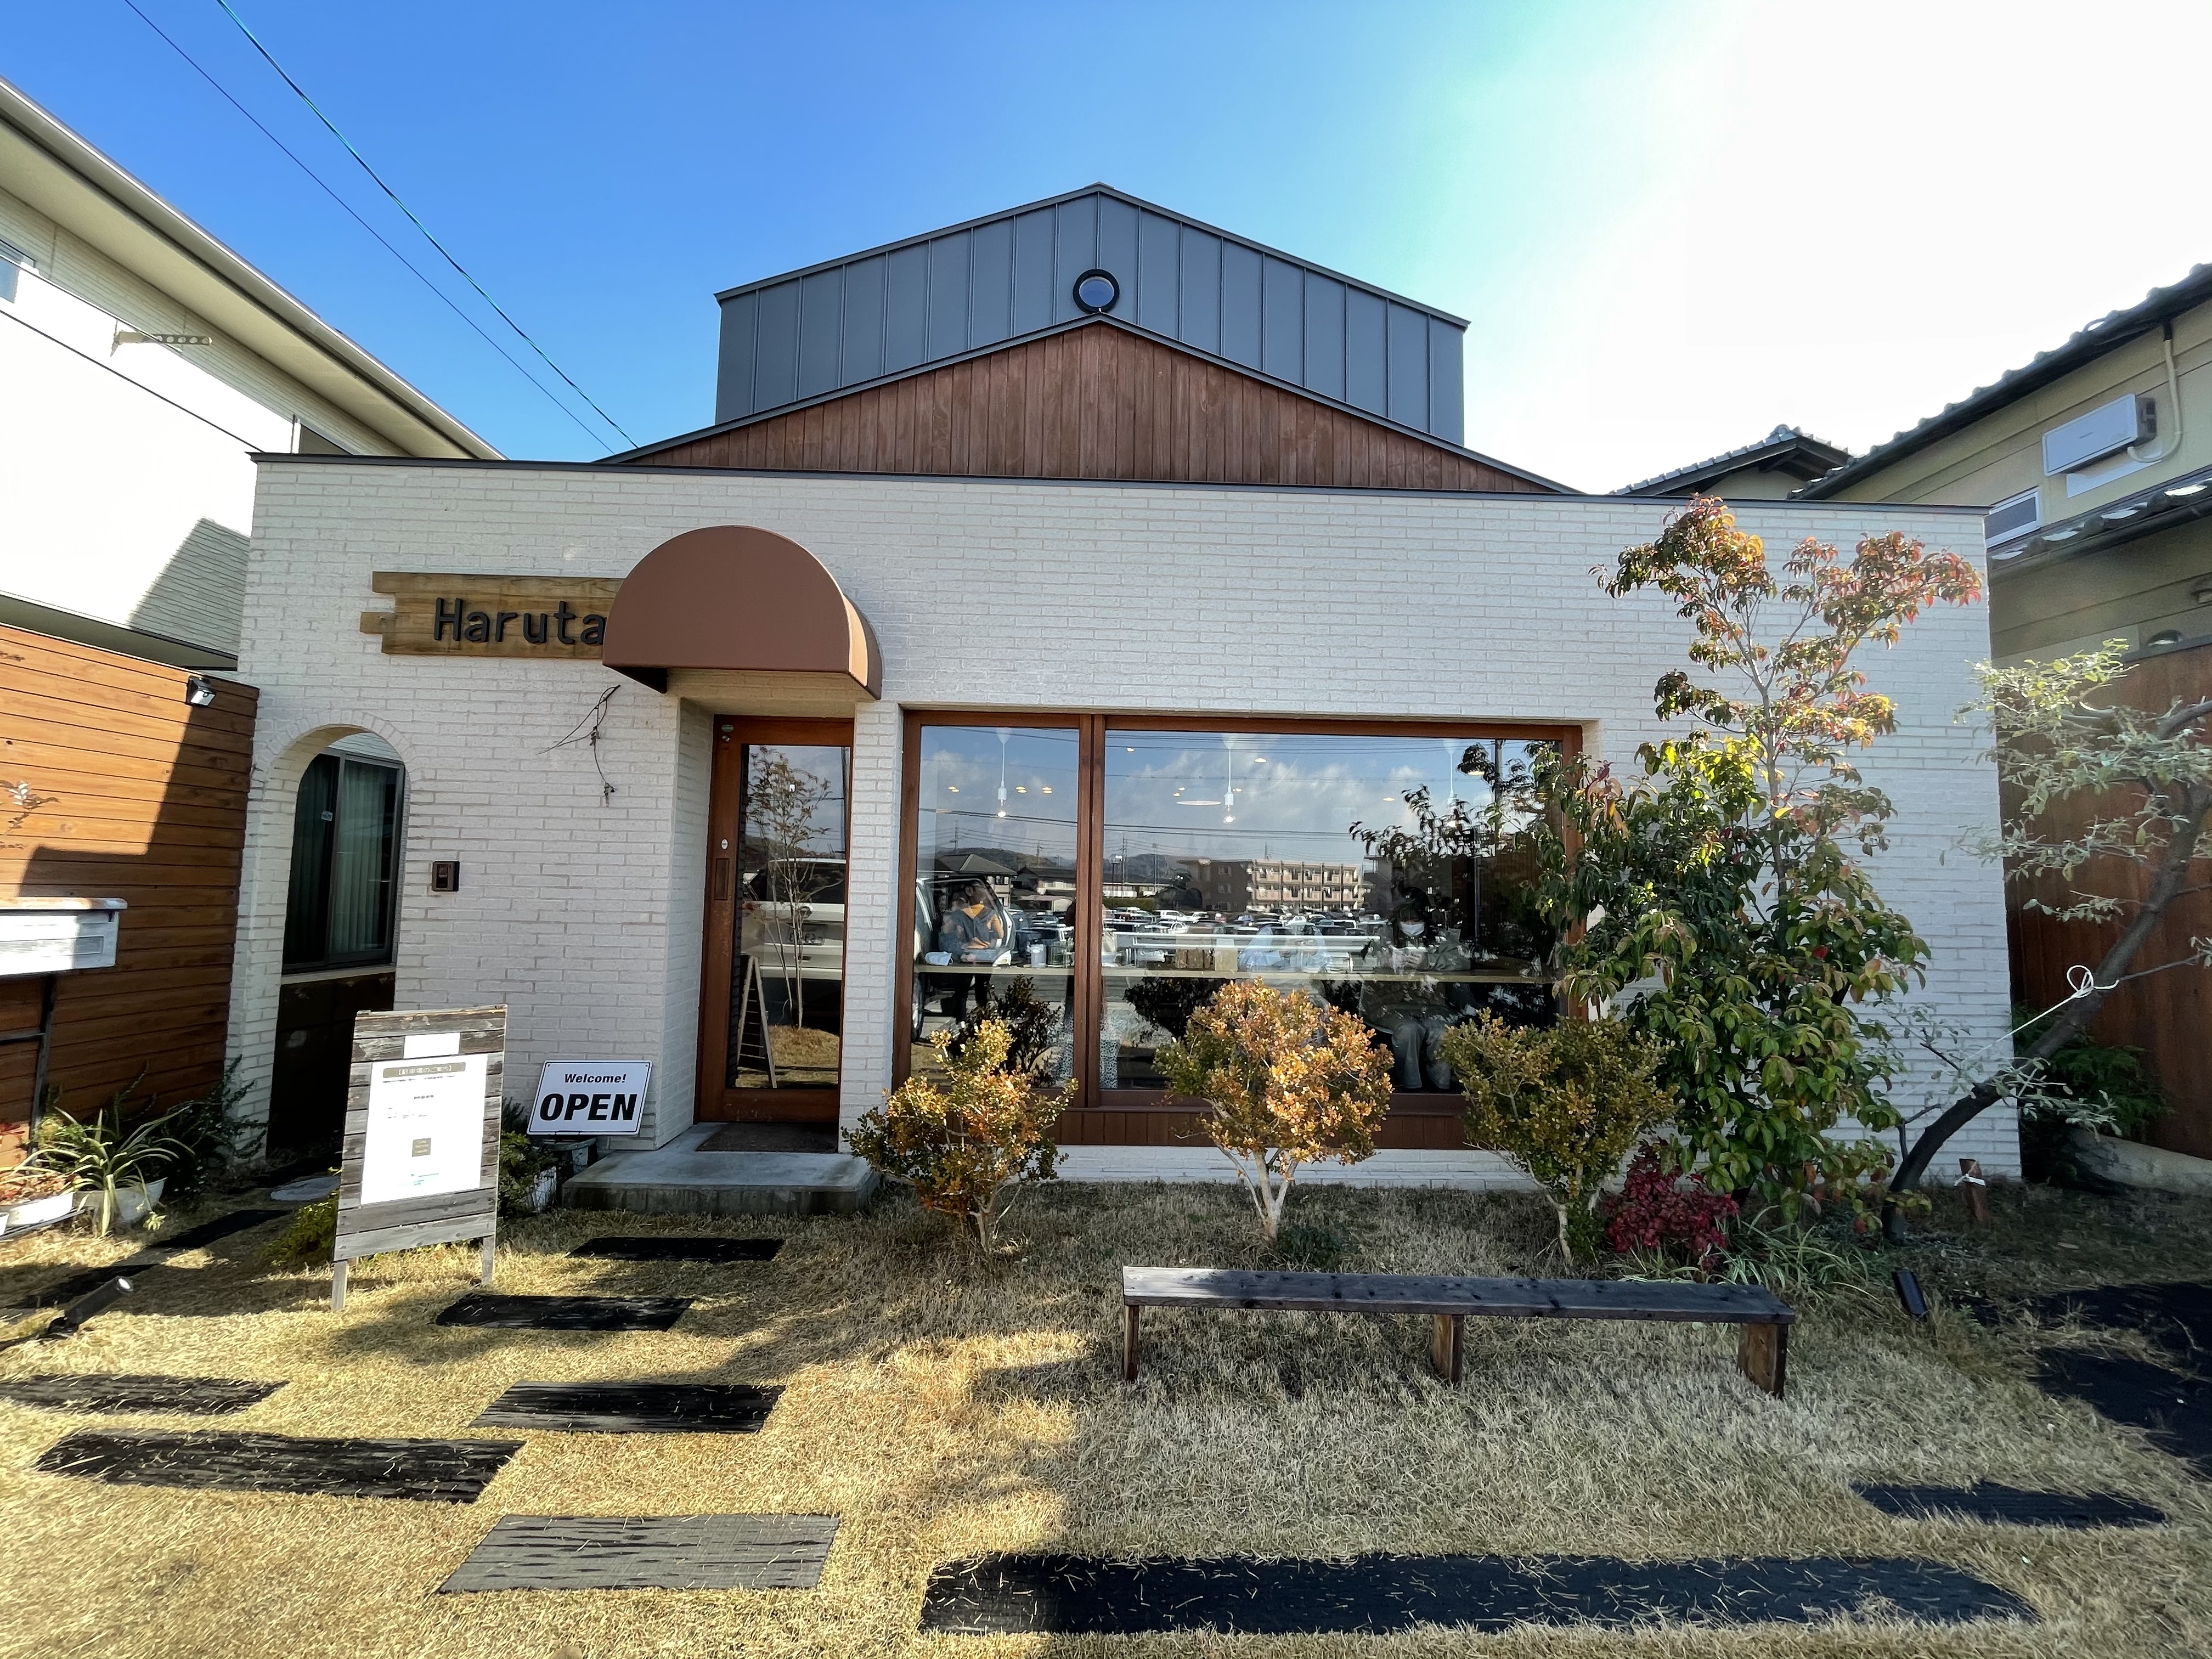 Cafe Haruta 倉敷で人気のお洒落カフェで自家製パンチェッタのドリア 映えカレーのランチ まるごと岡山食べつくし日記